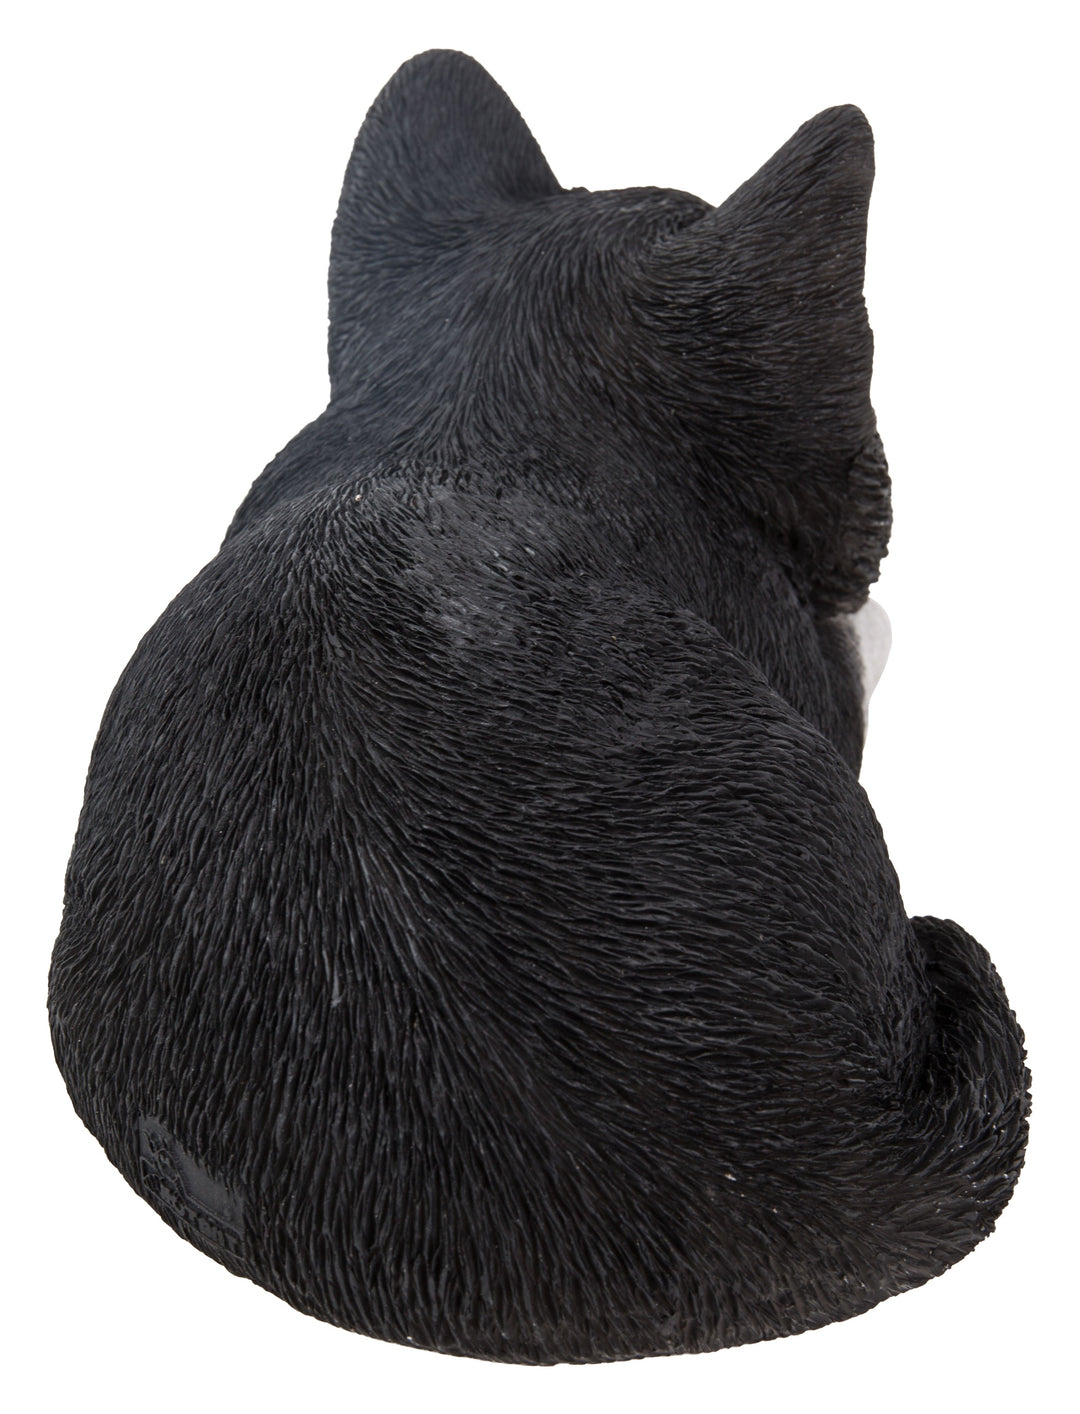 Kitten Sleeping - Black and White Statue HI-LINE GIFT LTD.